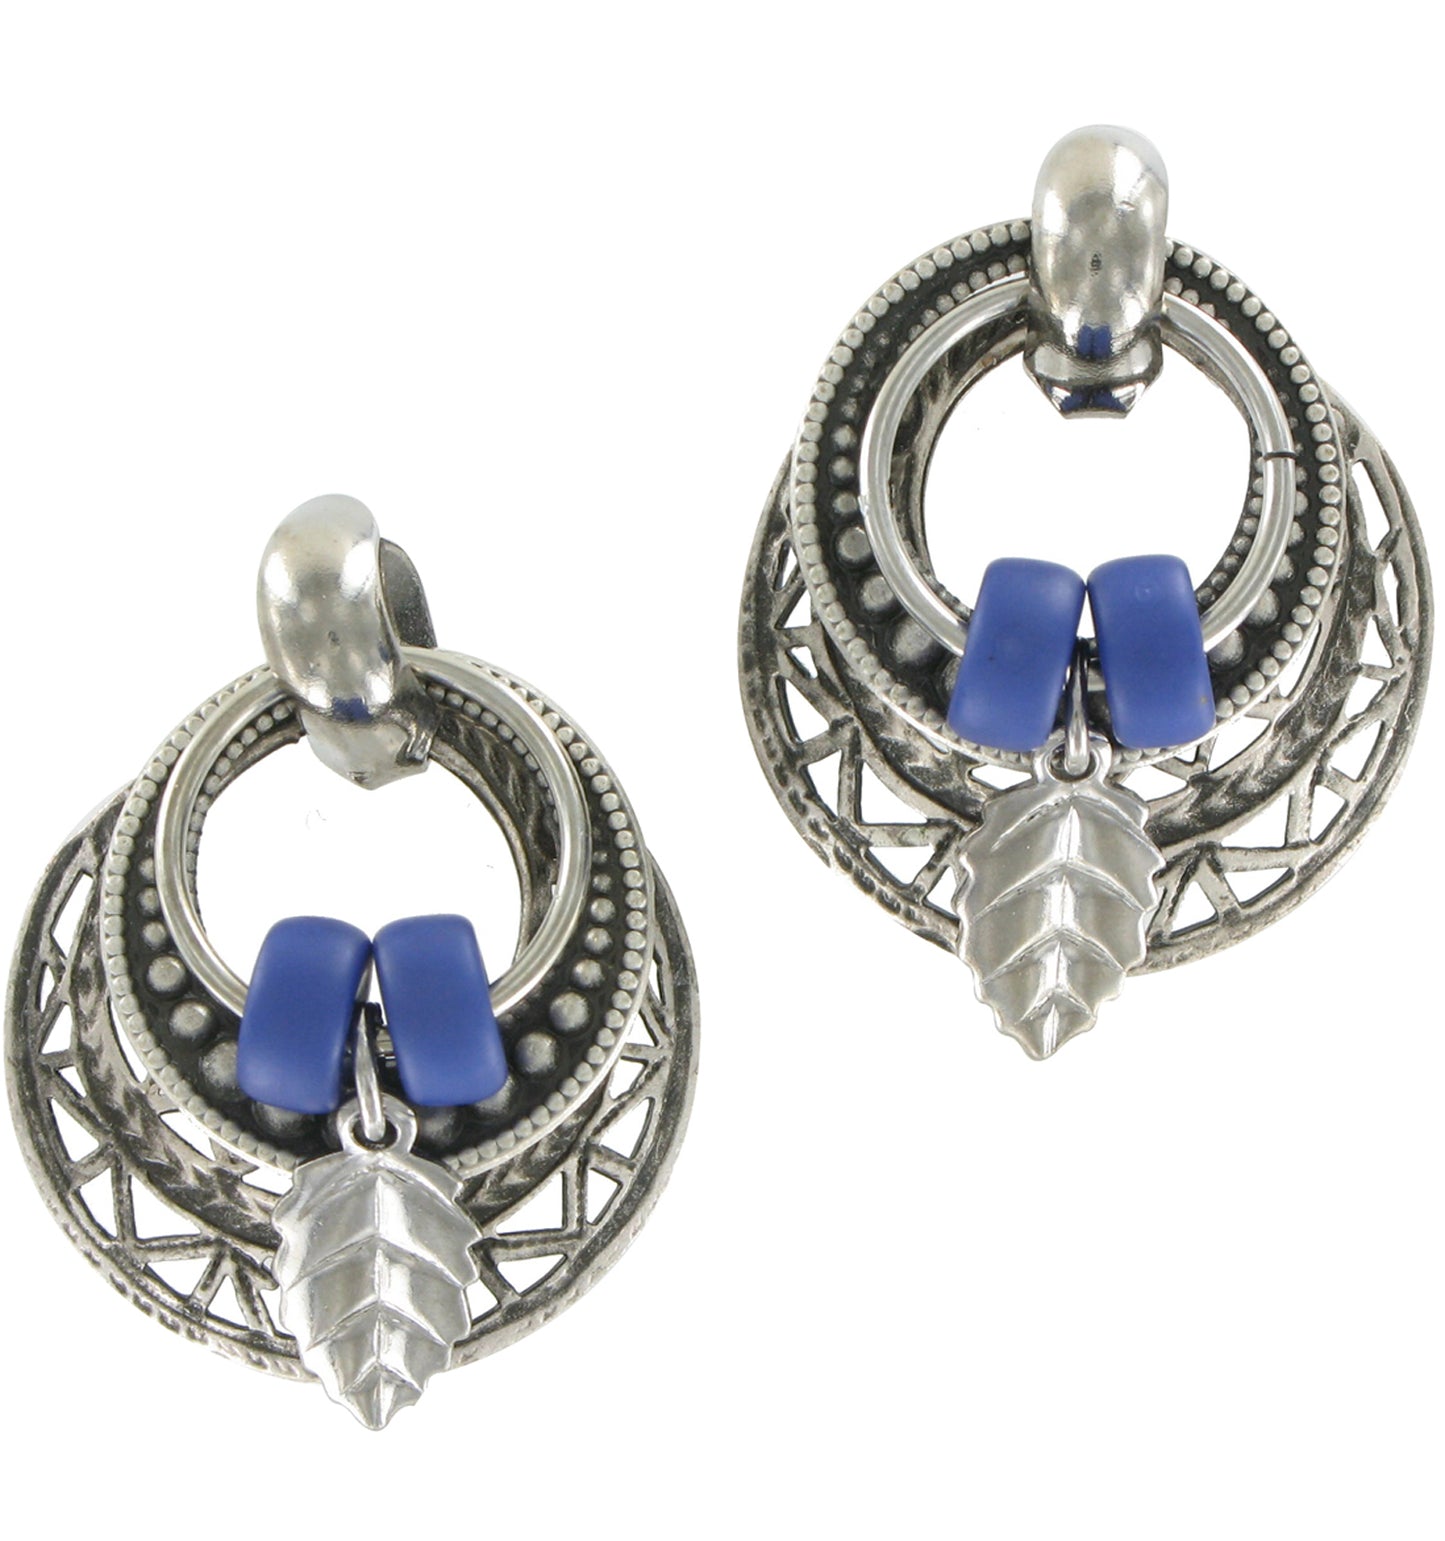 Doorknocker Earrings Silver Tone Tribal Ethnic Blue Leaf Pierced Earrings 1"